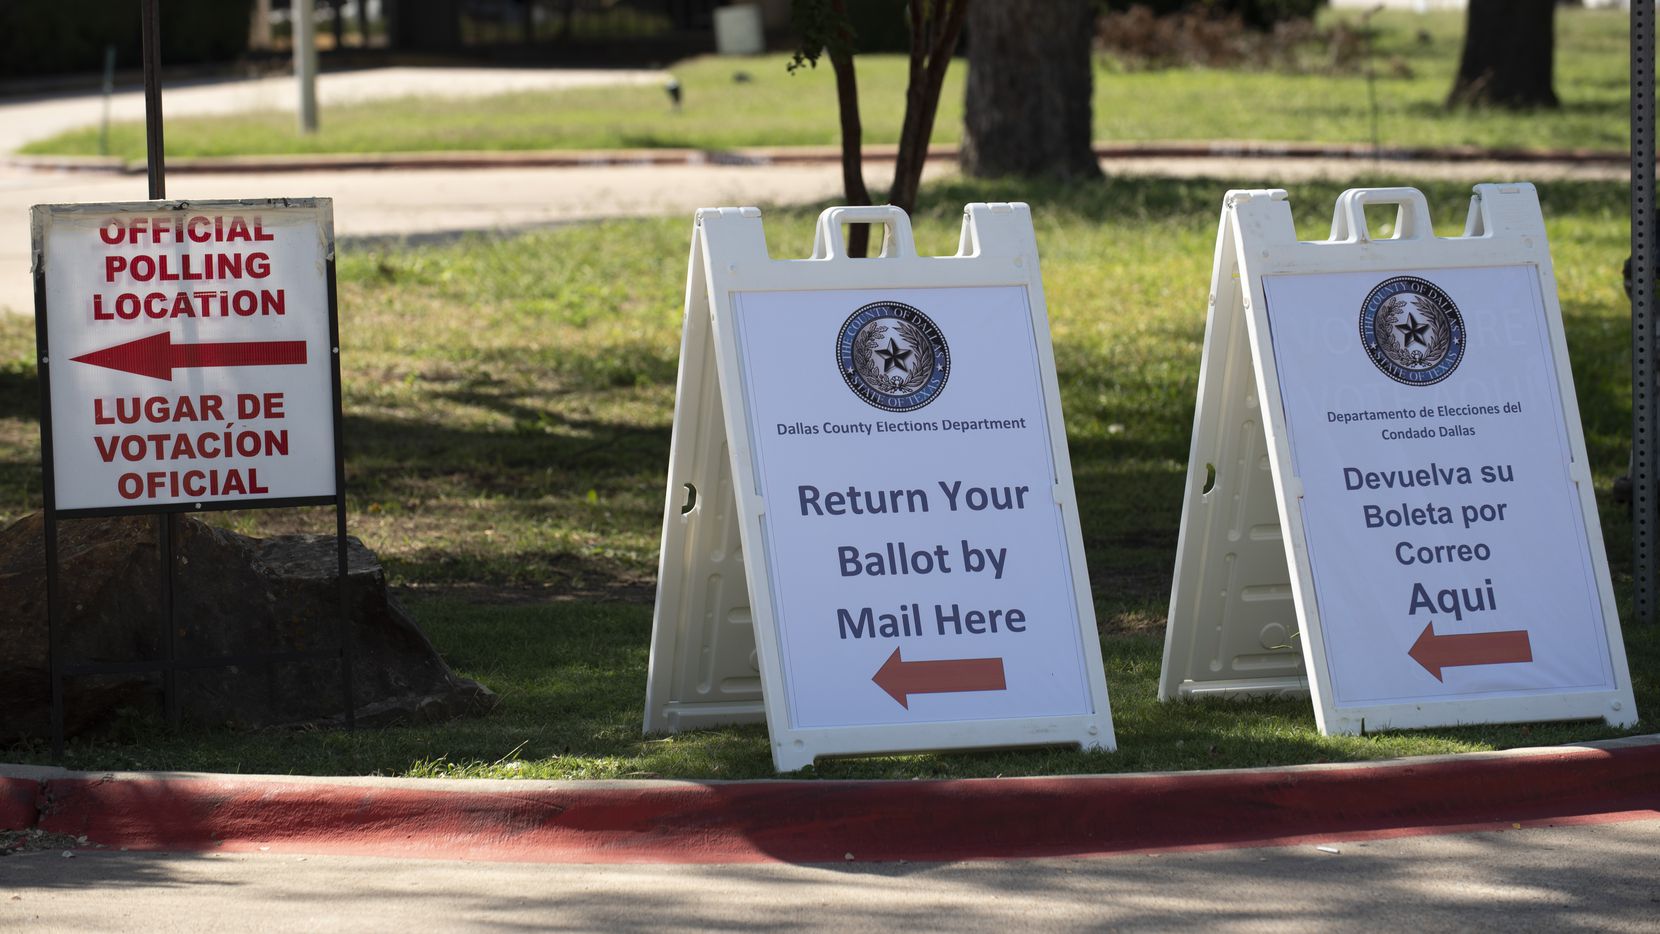 En mayo hay elecciones municipales en Dallas, con los 14 puestos de concejales en juego. El...